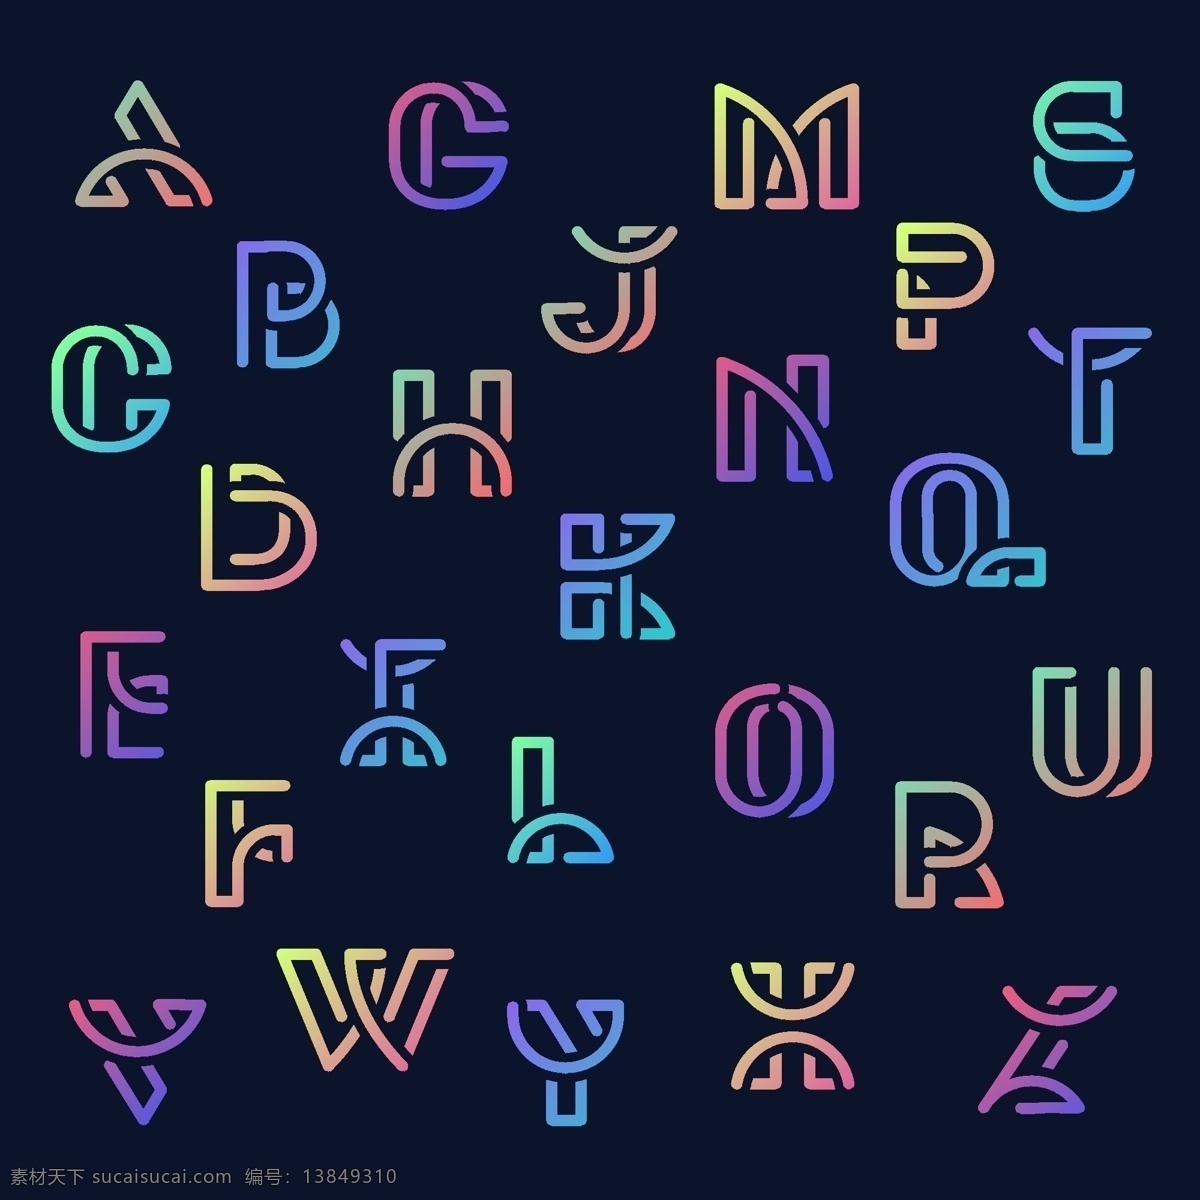 英文大写字母 英文字母 矢量字母 卡通字母 彩色渐变字母 时尚字母 手绘字母 现代字母 创意字母 艺术字母 字母设计 品质感字母 数字字母 标志图标 其他图标